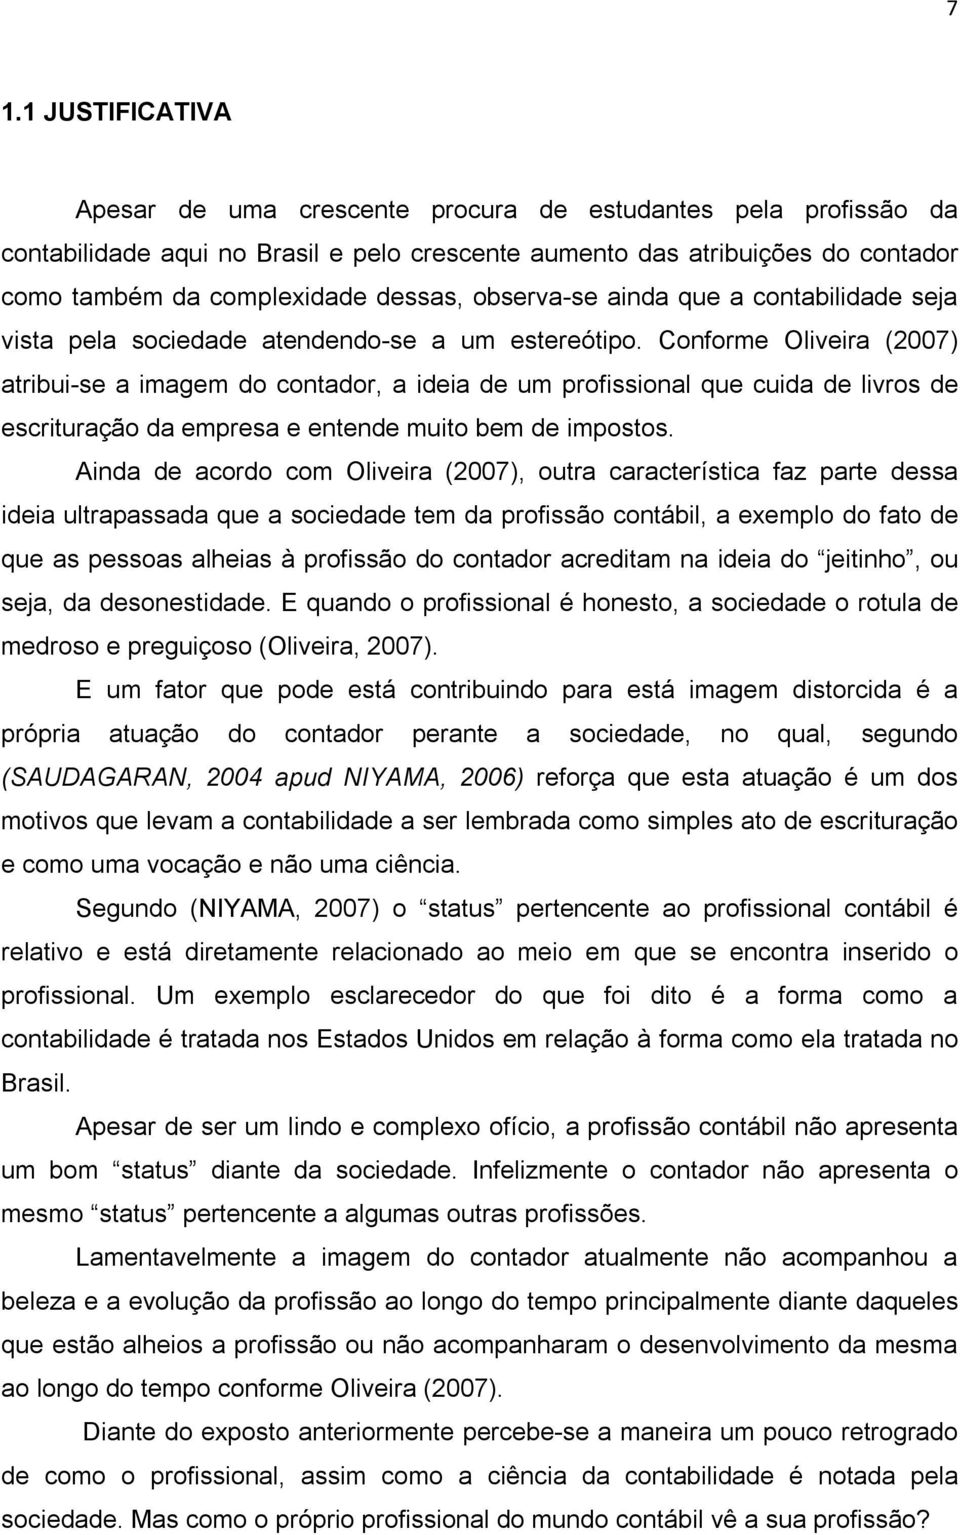 Conforme Oliveira (2007) atribui-se a imagem do contador, a ideia de um profissional que cuida de livros de escrituração da empresa e entende muito bem de impostos.